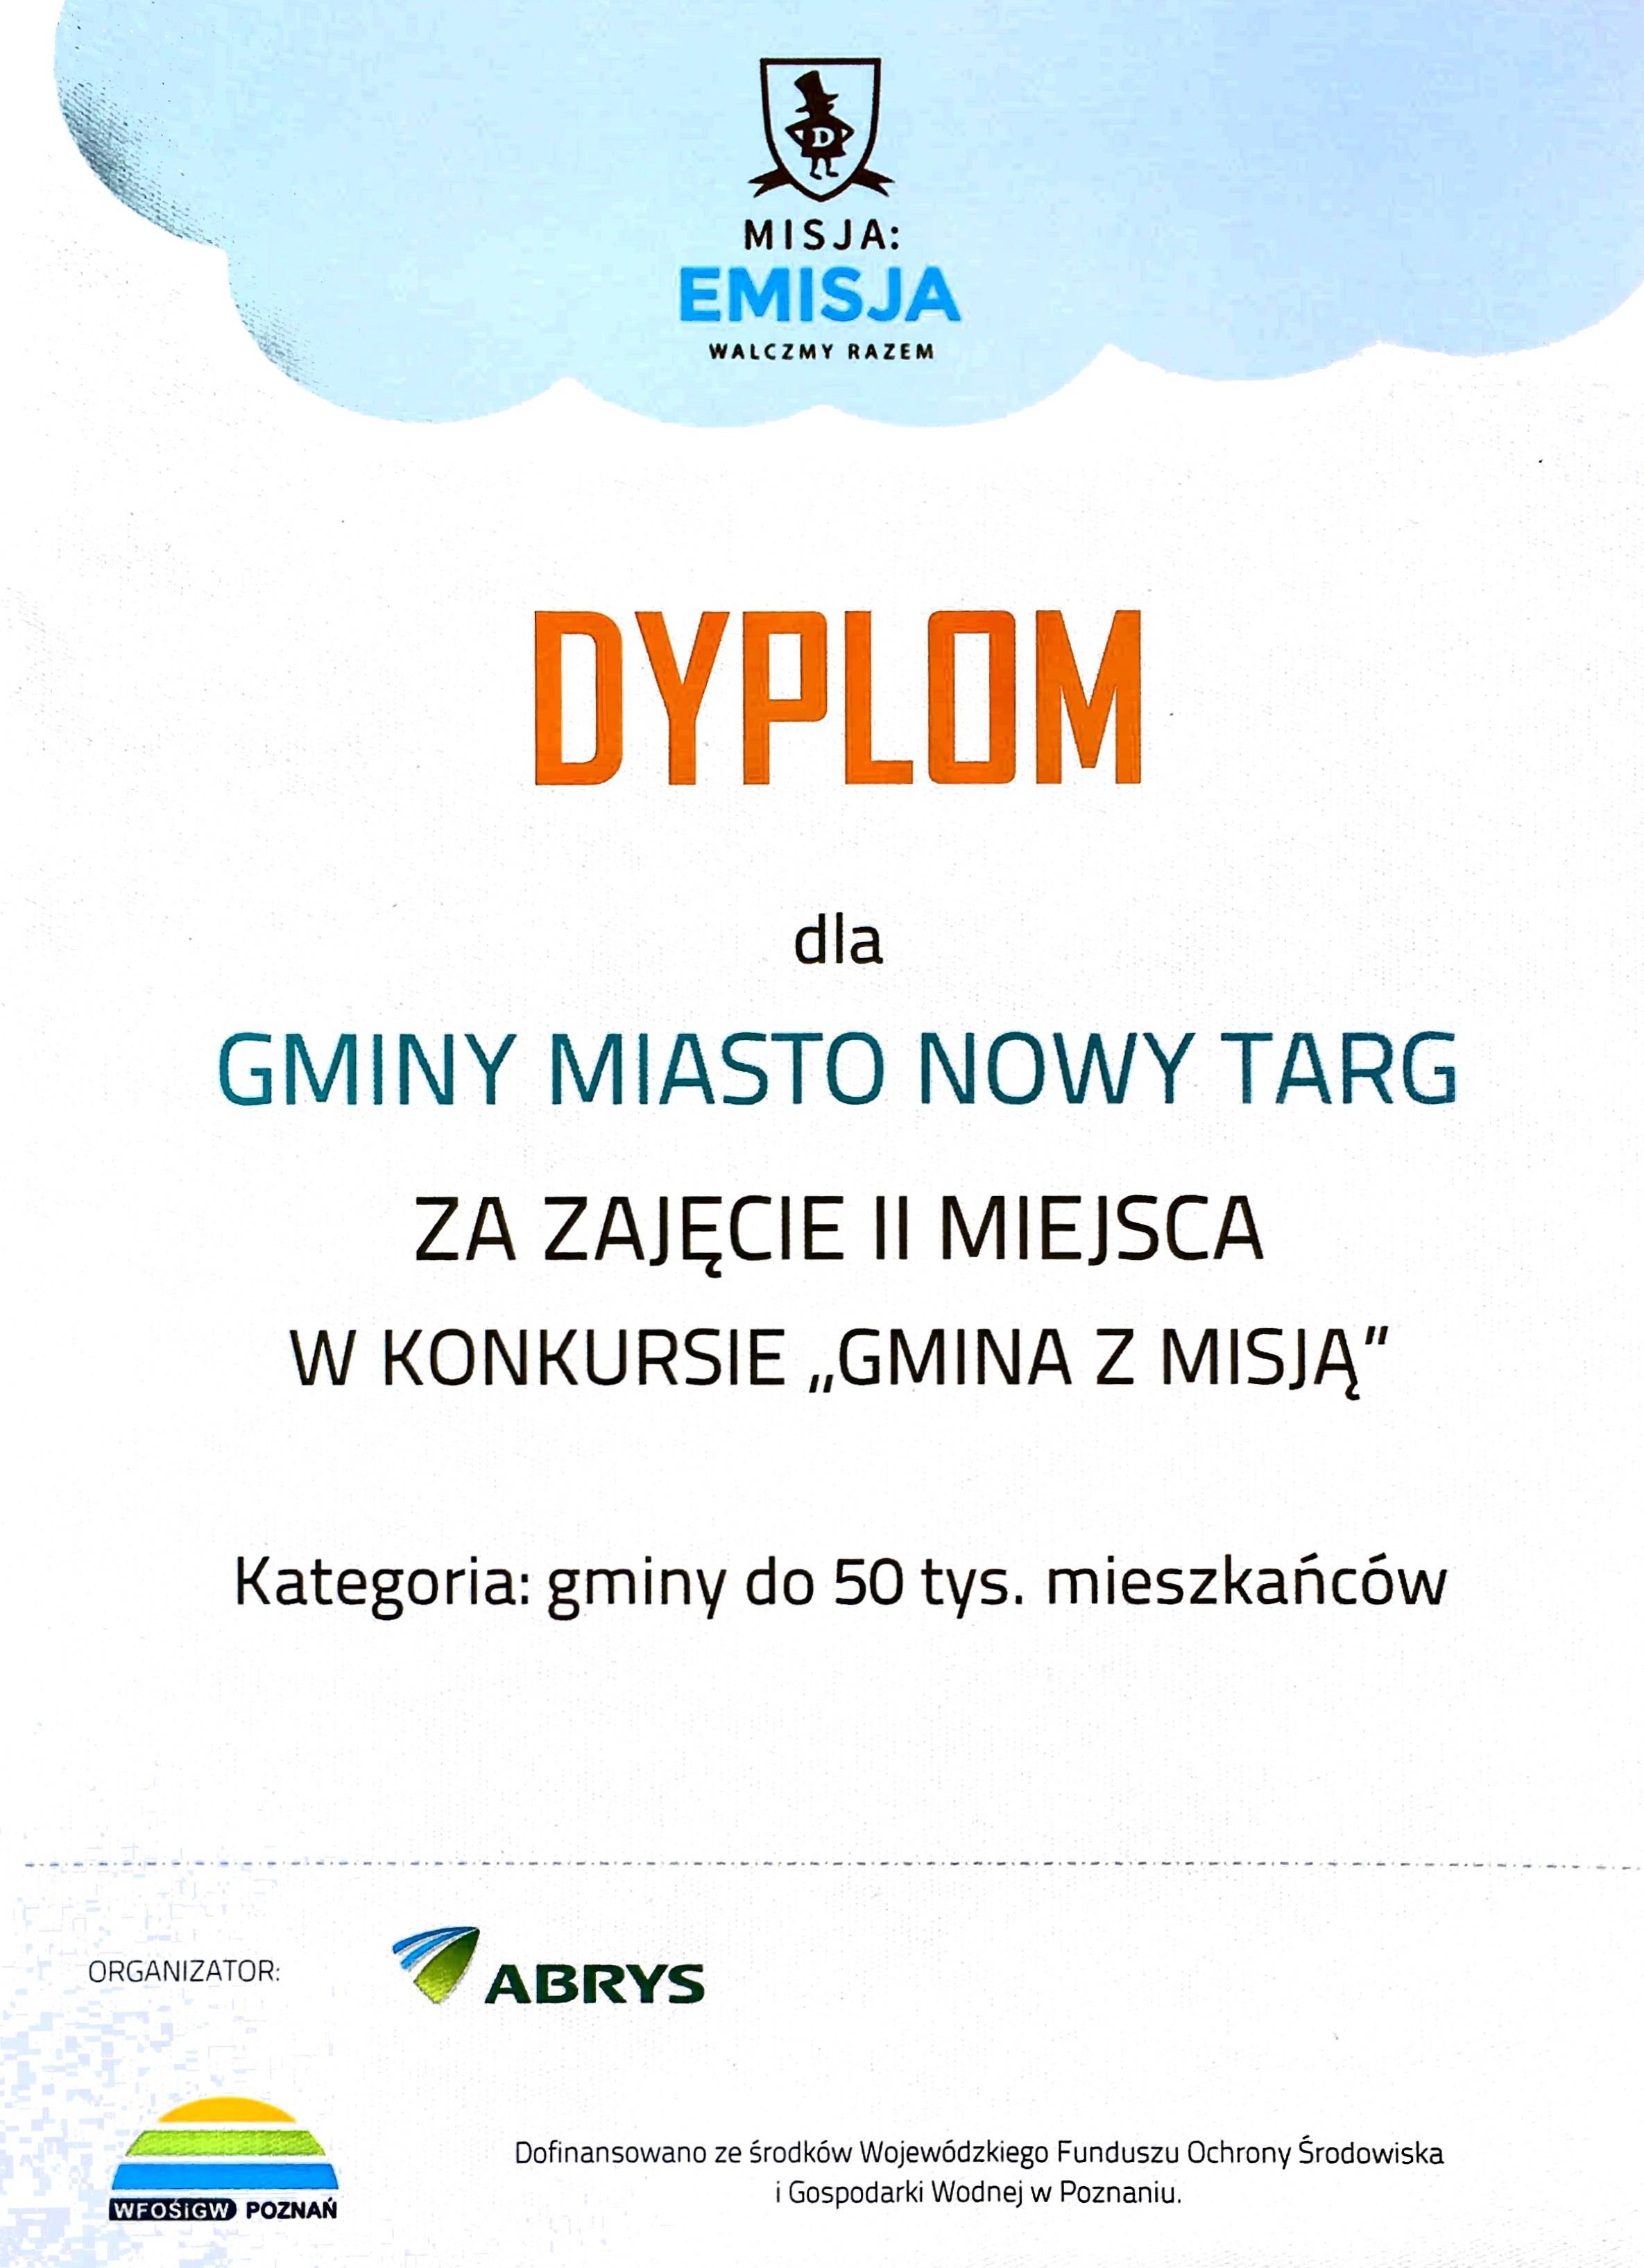 Dyplom dla miasta Nowy Targ za zajęcie II miejsca w Polsce w zakresie walki z Niską Emisją!